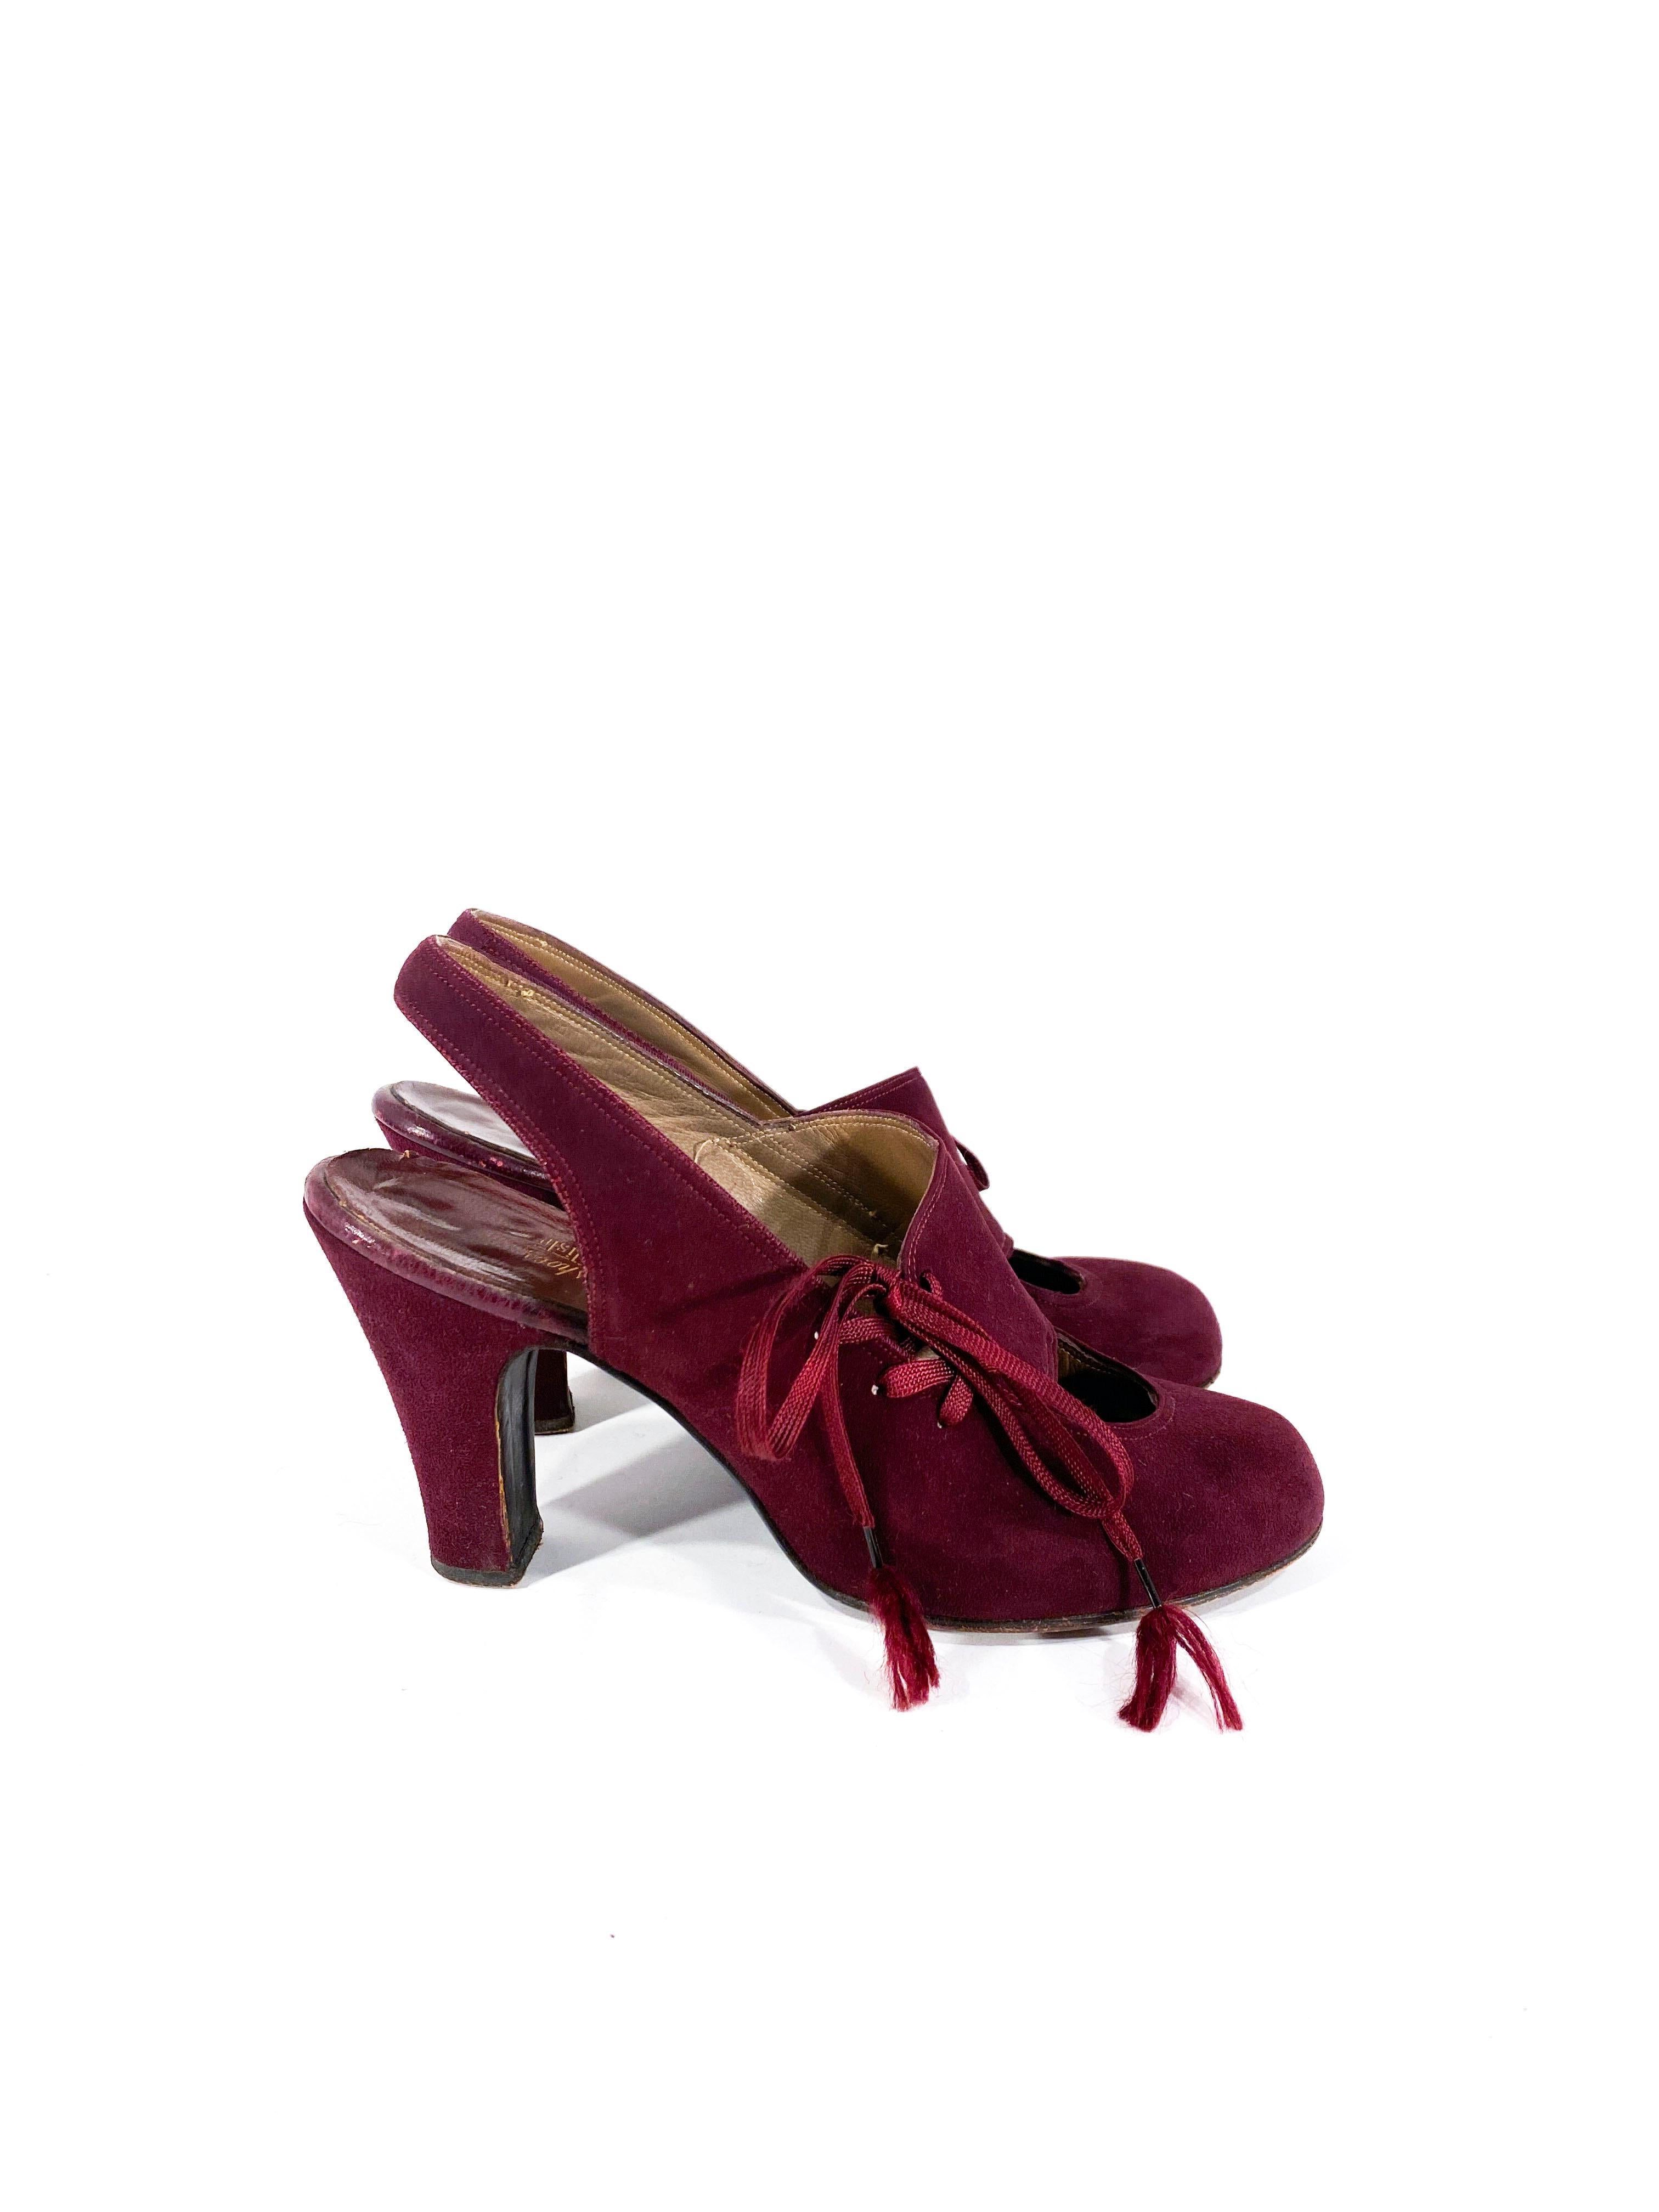 maroon heels